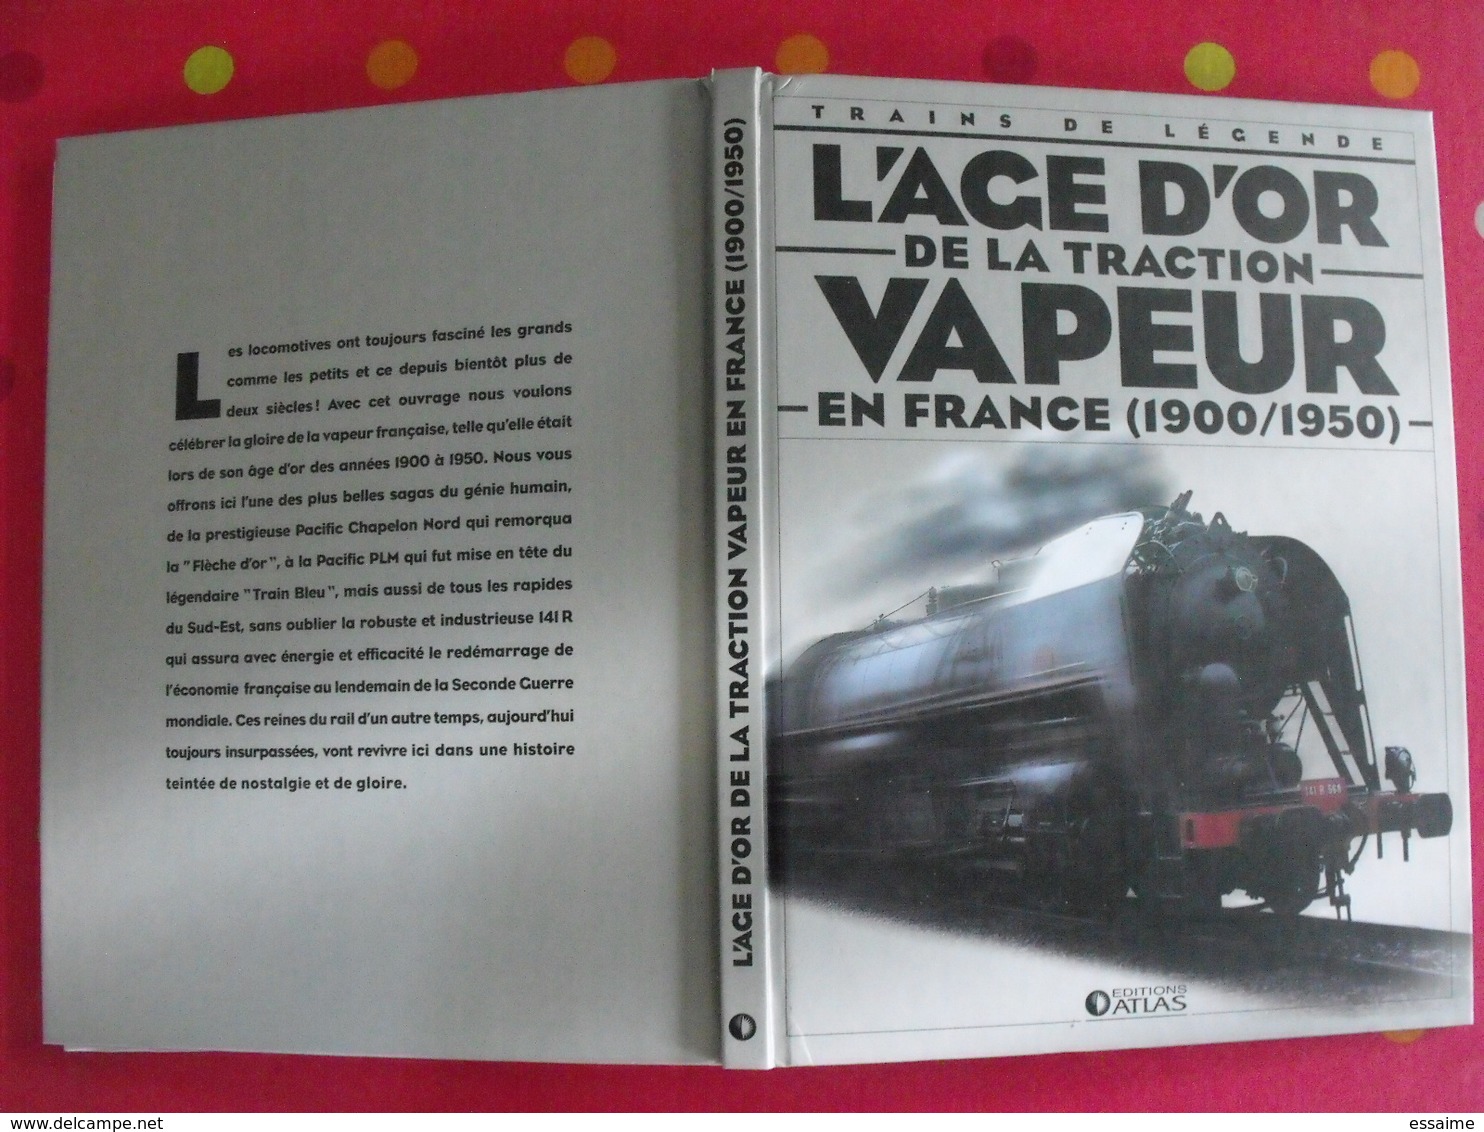 L'age D'or De La Traction Vapeur En France (1900-1950). Trains De Légende. Clive Lamming. Atlas 2005 + Poster - Ferrovie & Tranvie